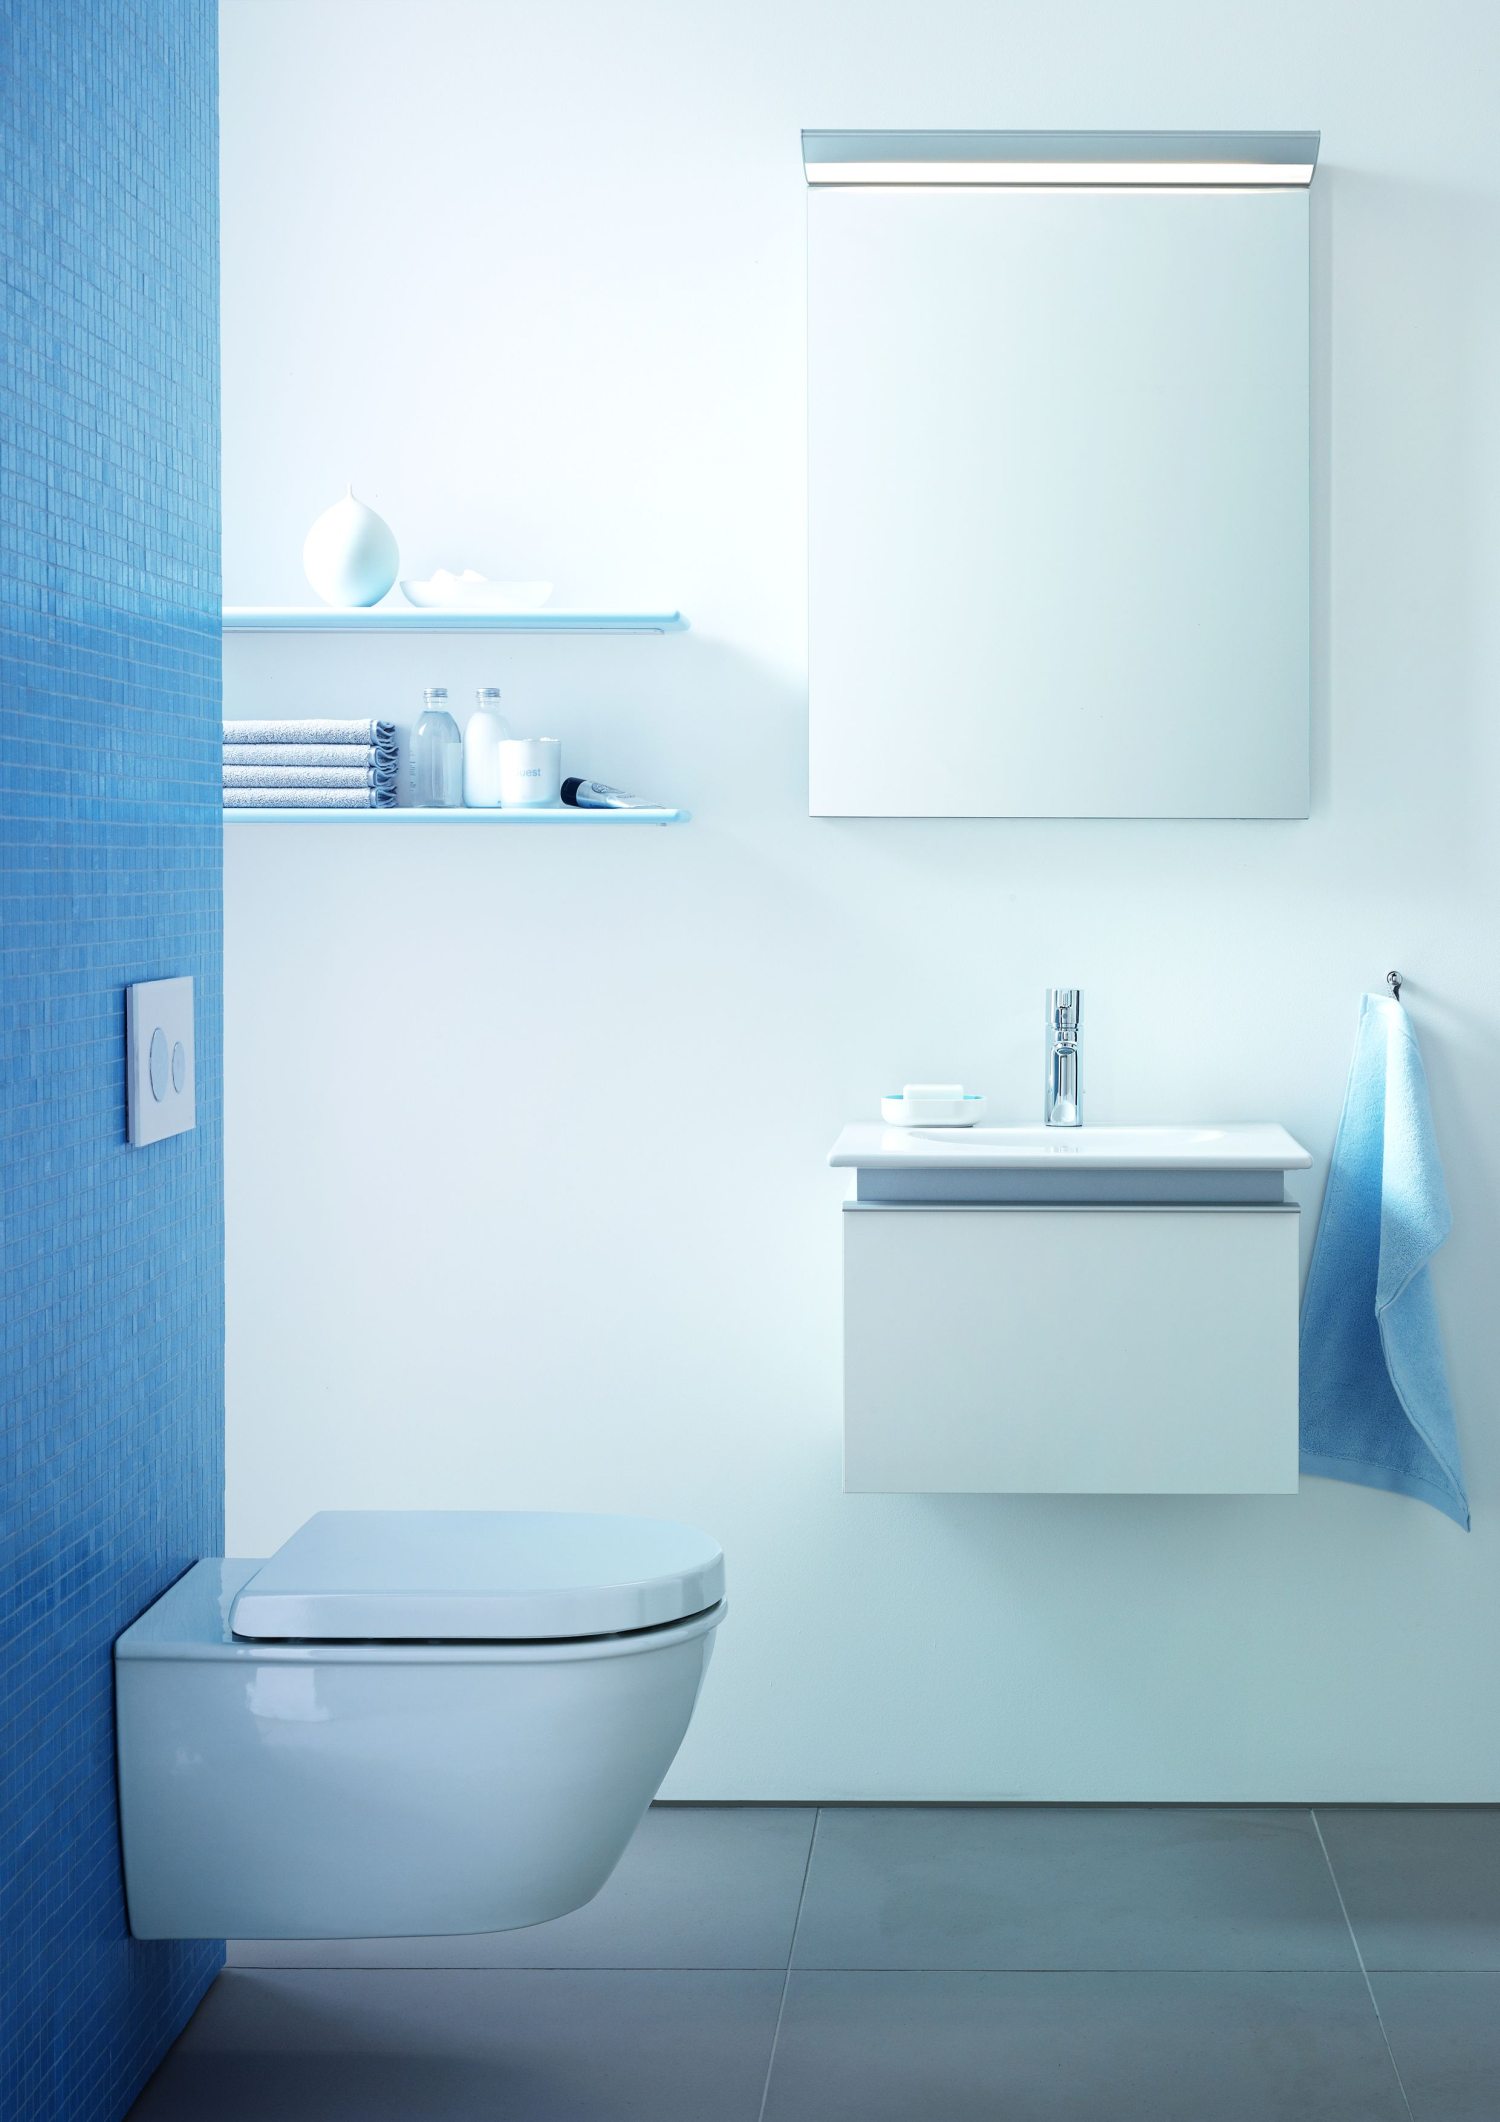 łazienka morska, łazienka w stylu marynistycznym, błękity w łazience